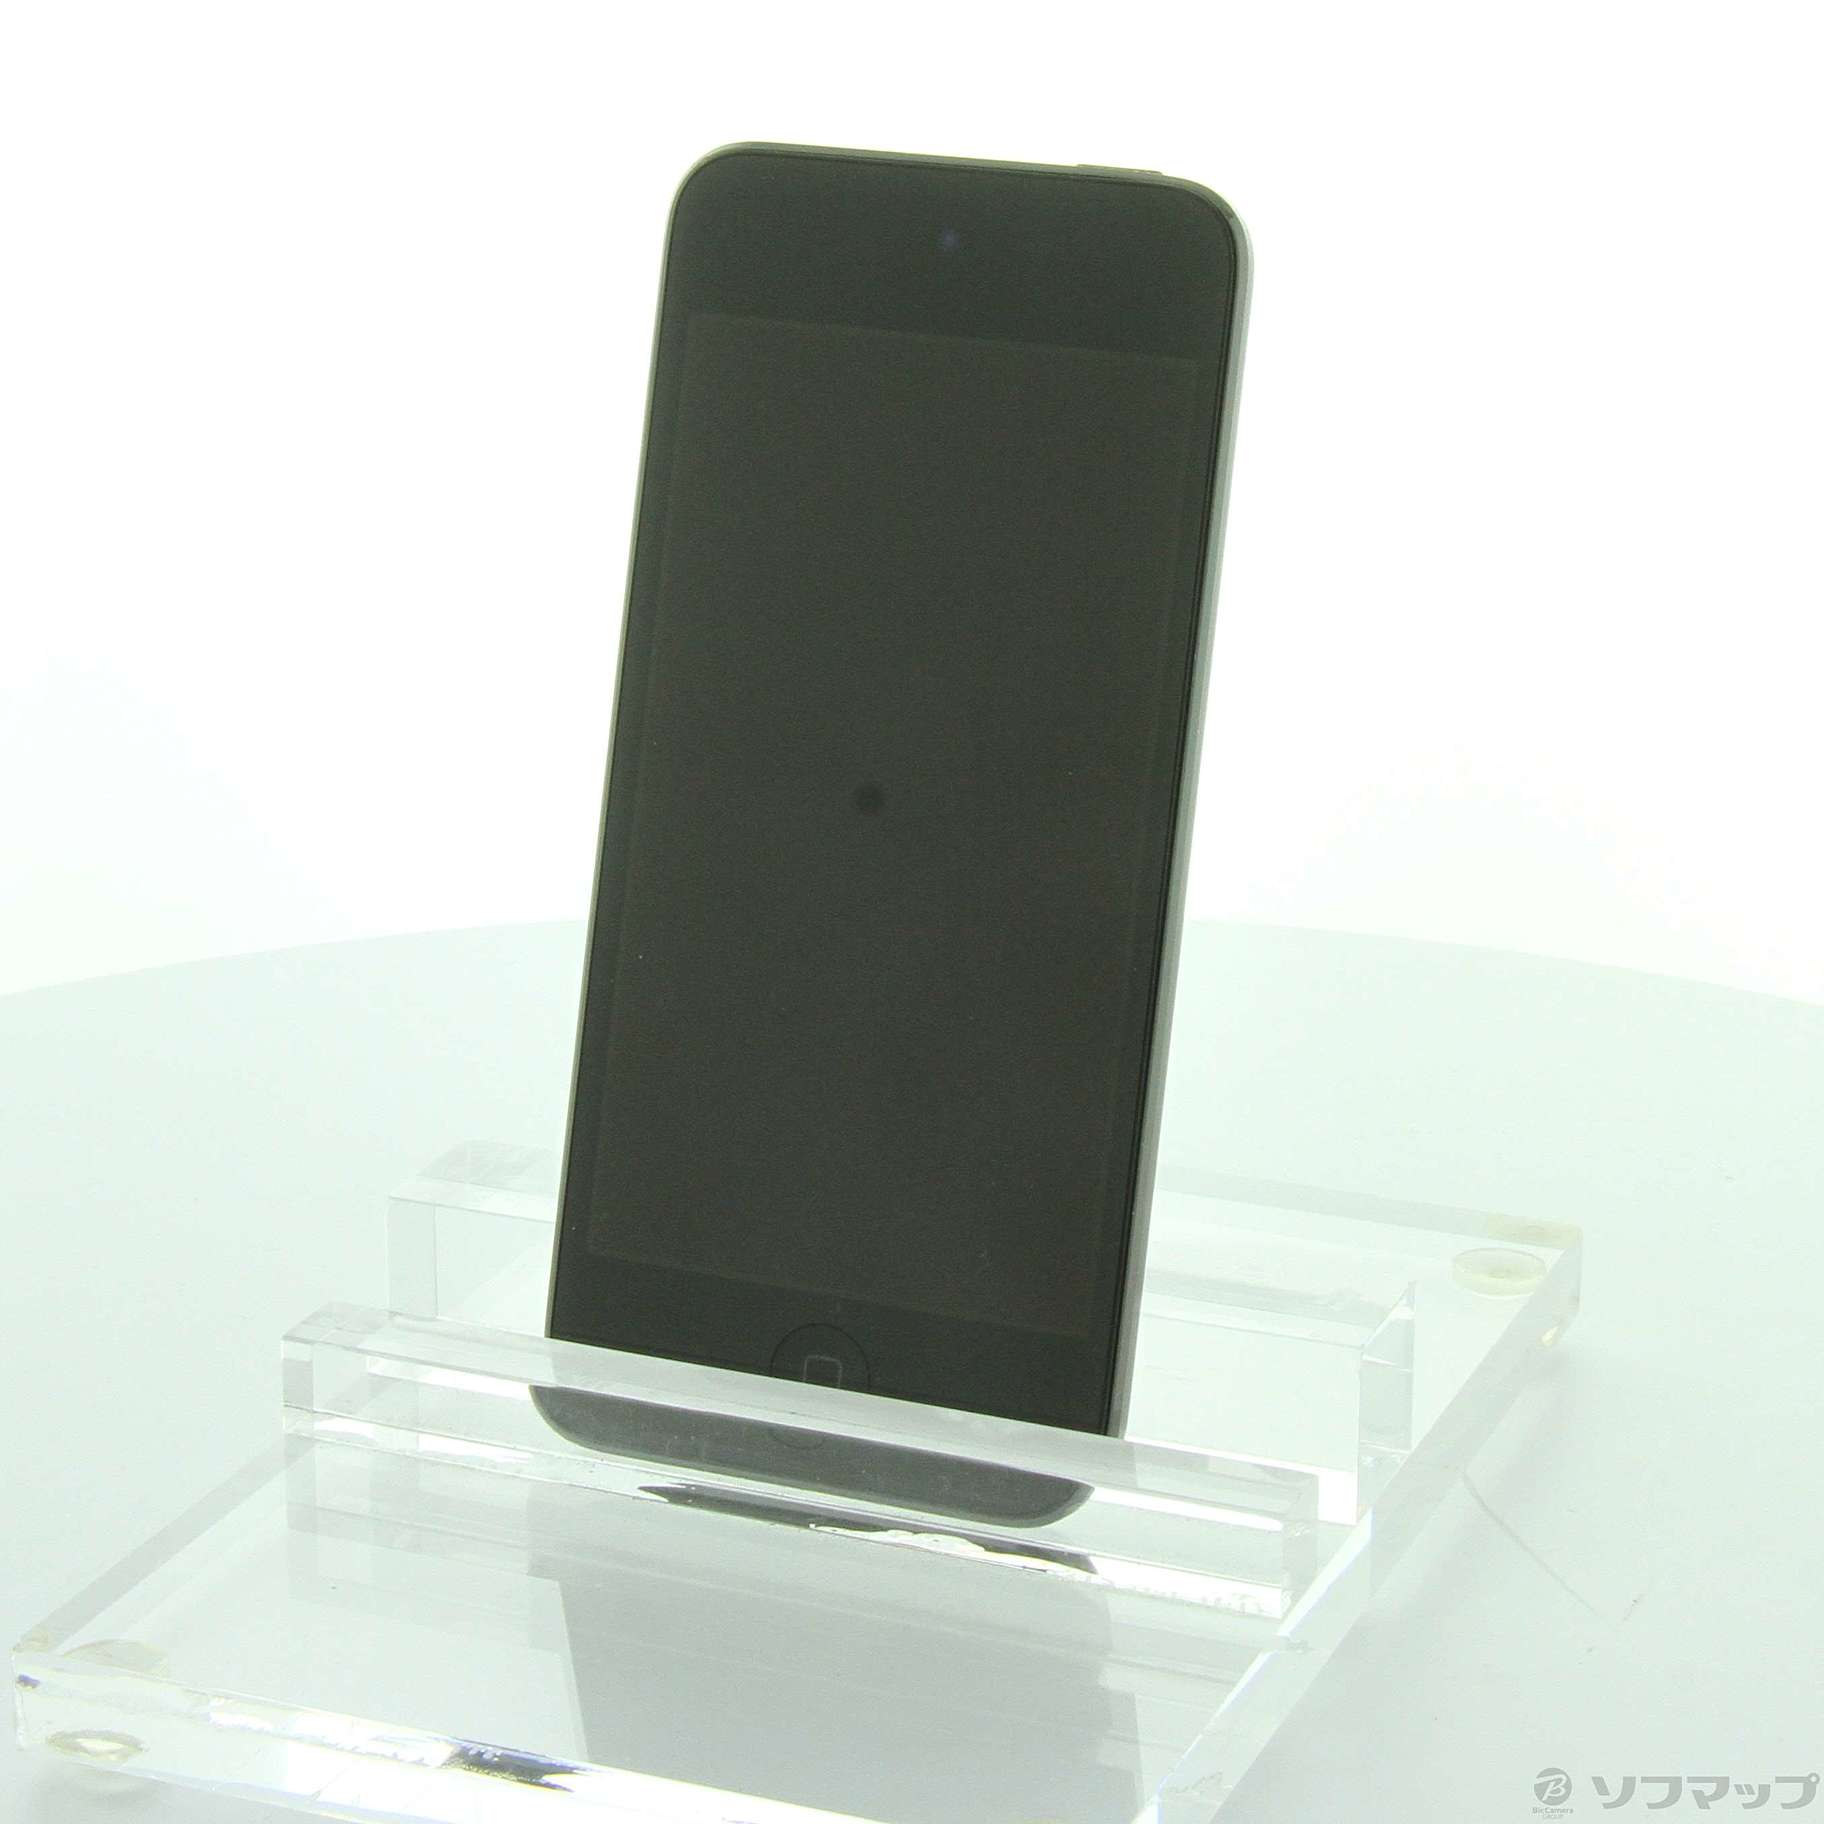 スマートフォン/携帯電話ipod touch 第6世代 スペースグレイ 32GB